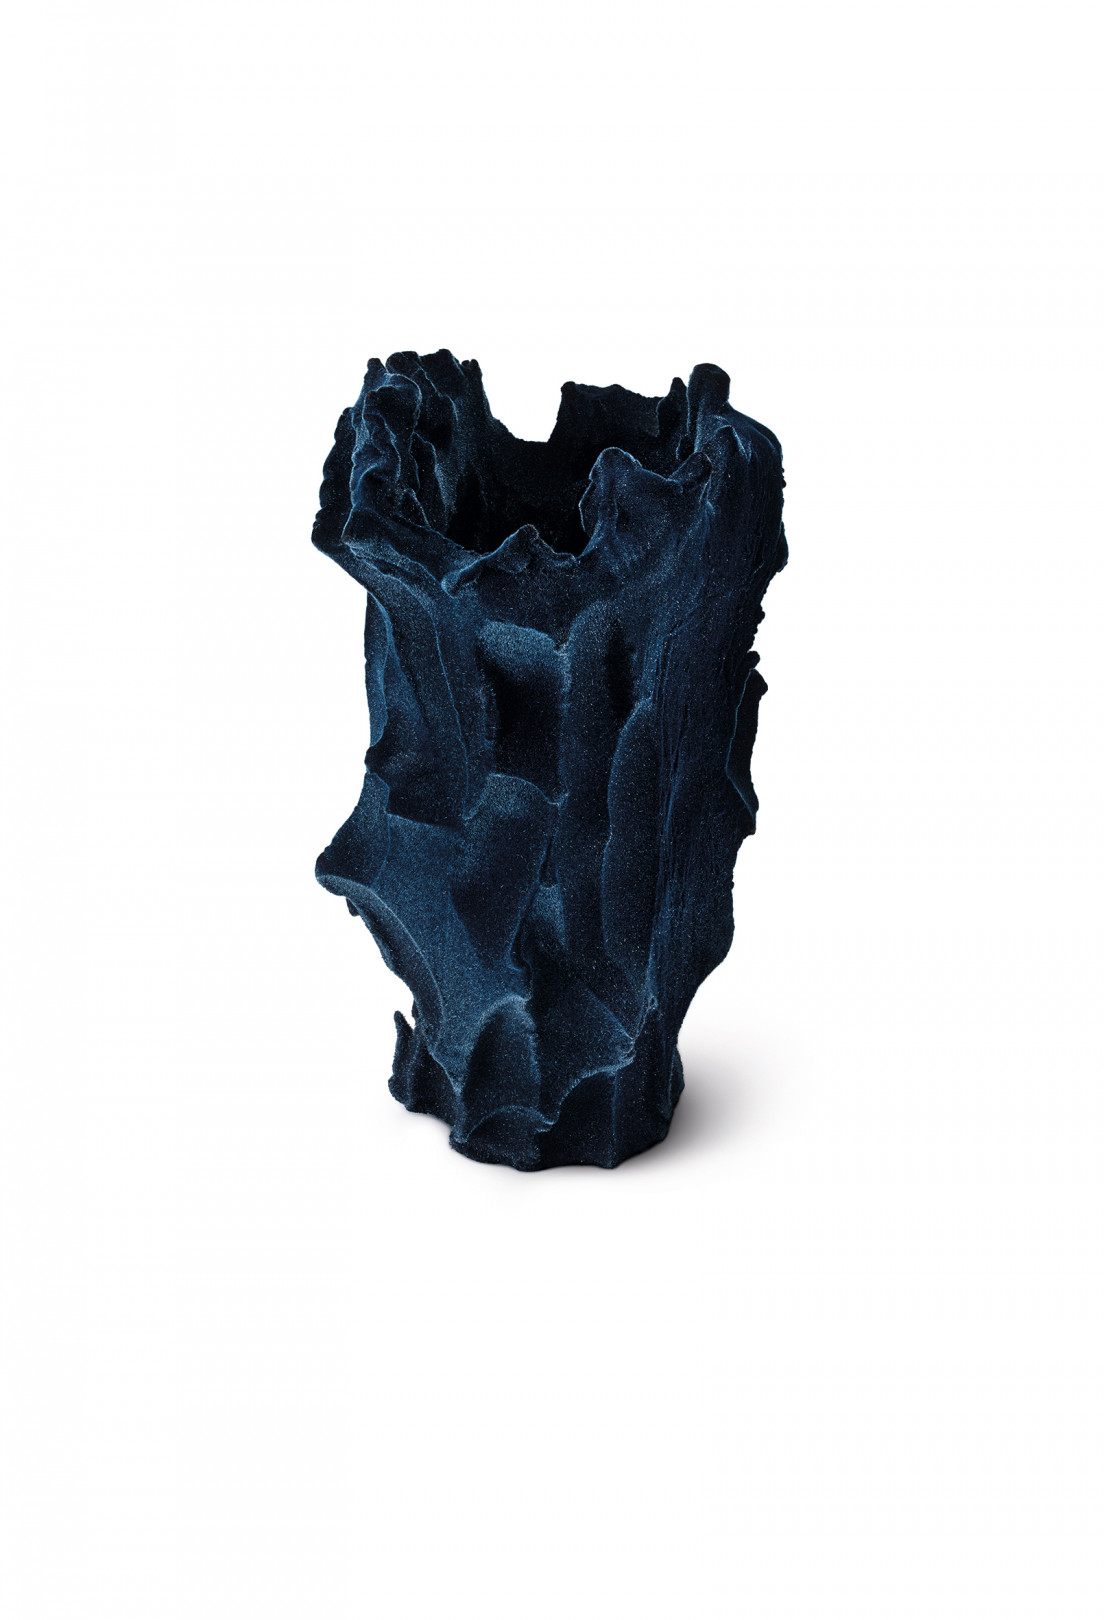 ミハル・ファーゴ,イスラエル 『Untitled』せっ器セラミックス、繊維 (フロック加工)、200 x 200 x 400 mm 2018年